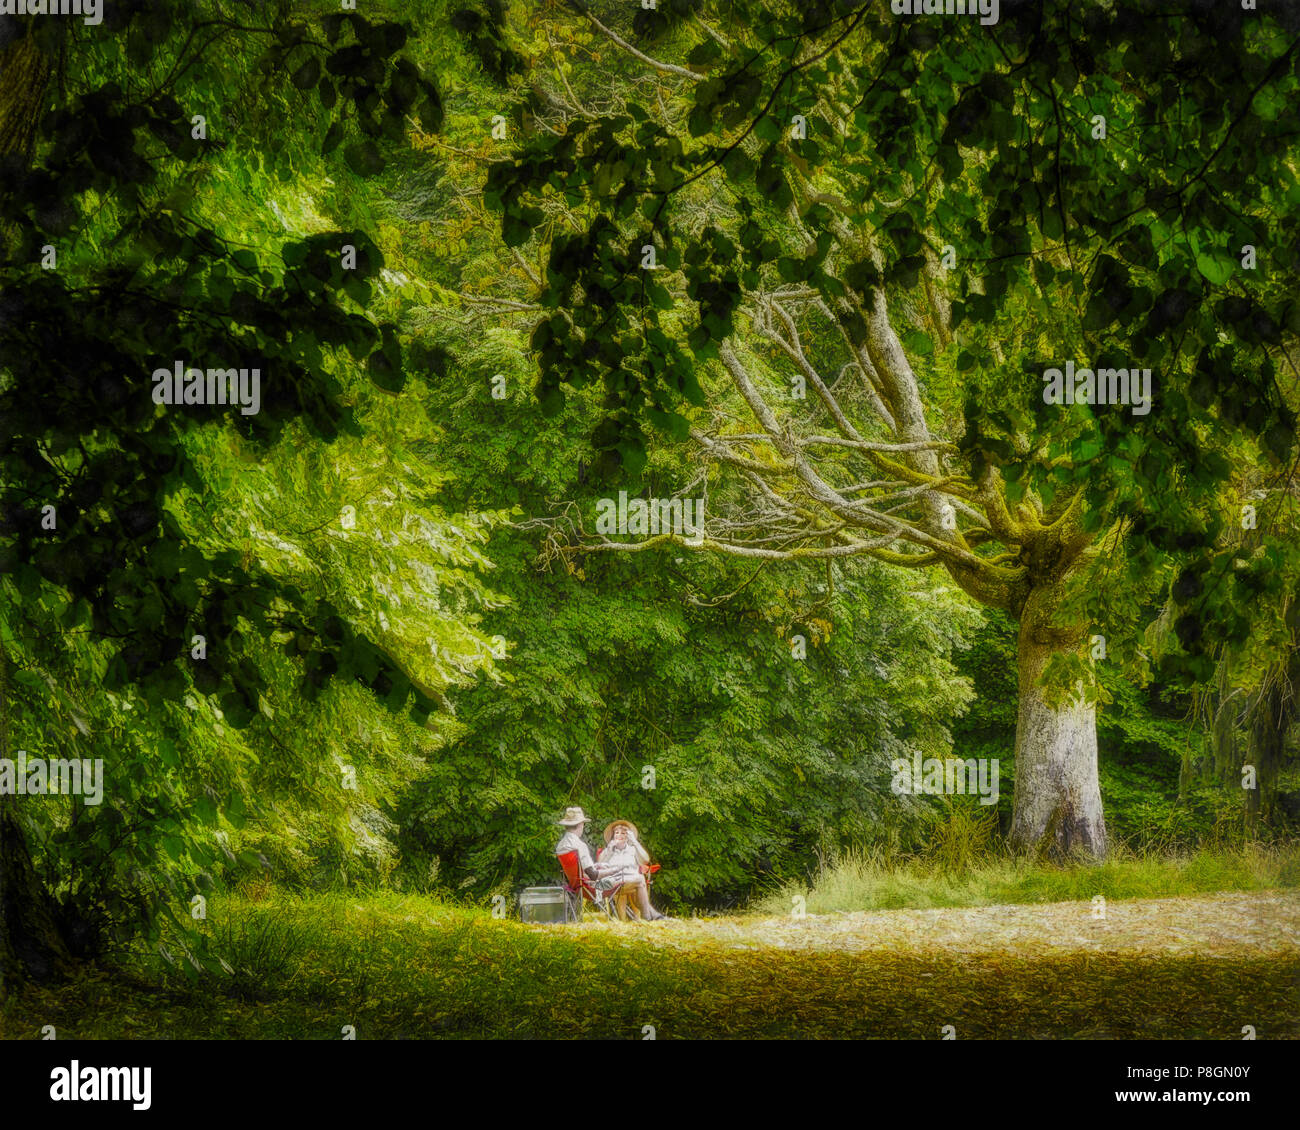 FINE ART NUMÉRIQUE : pique-nique dans le parc (image HDR) Banque D'Images